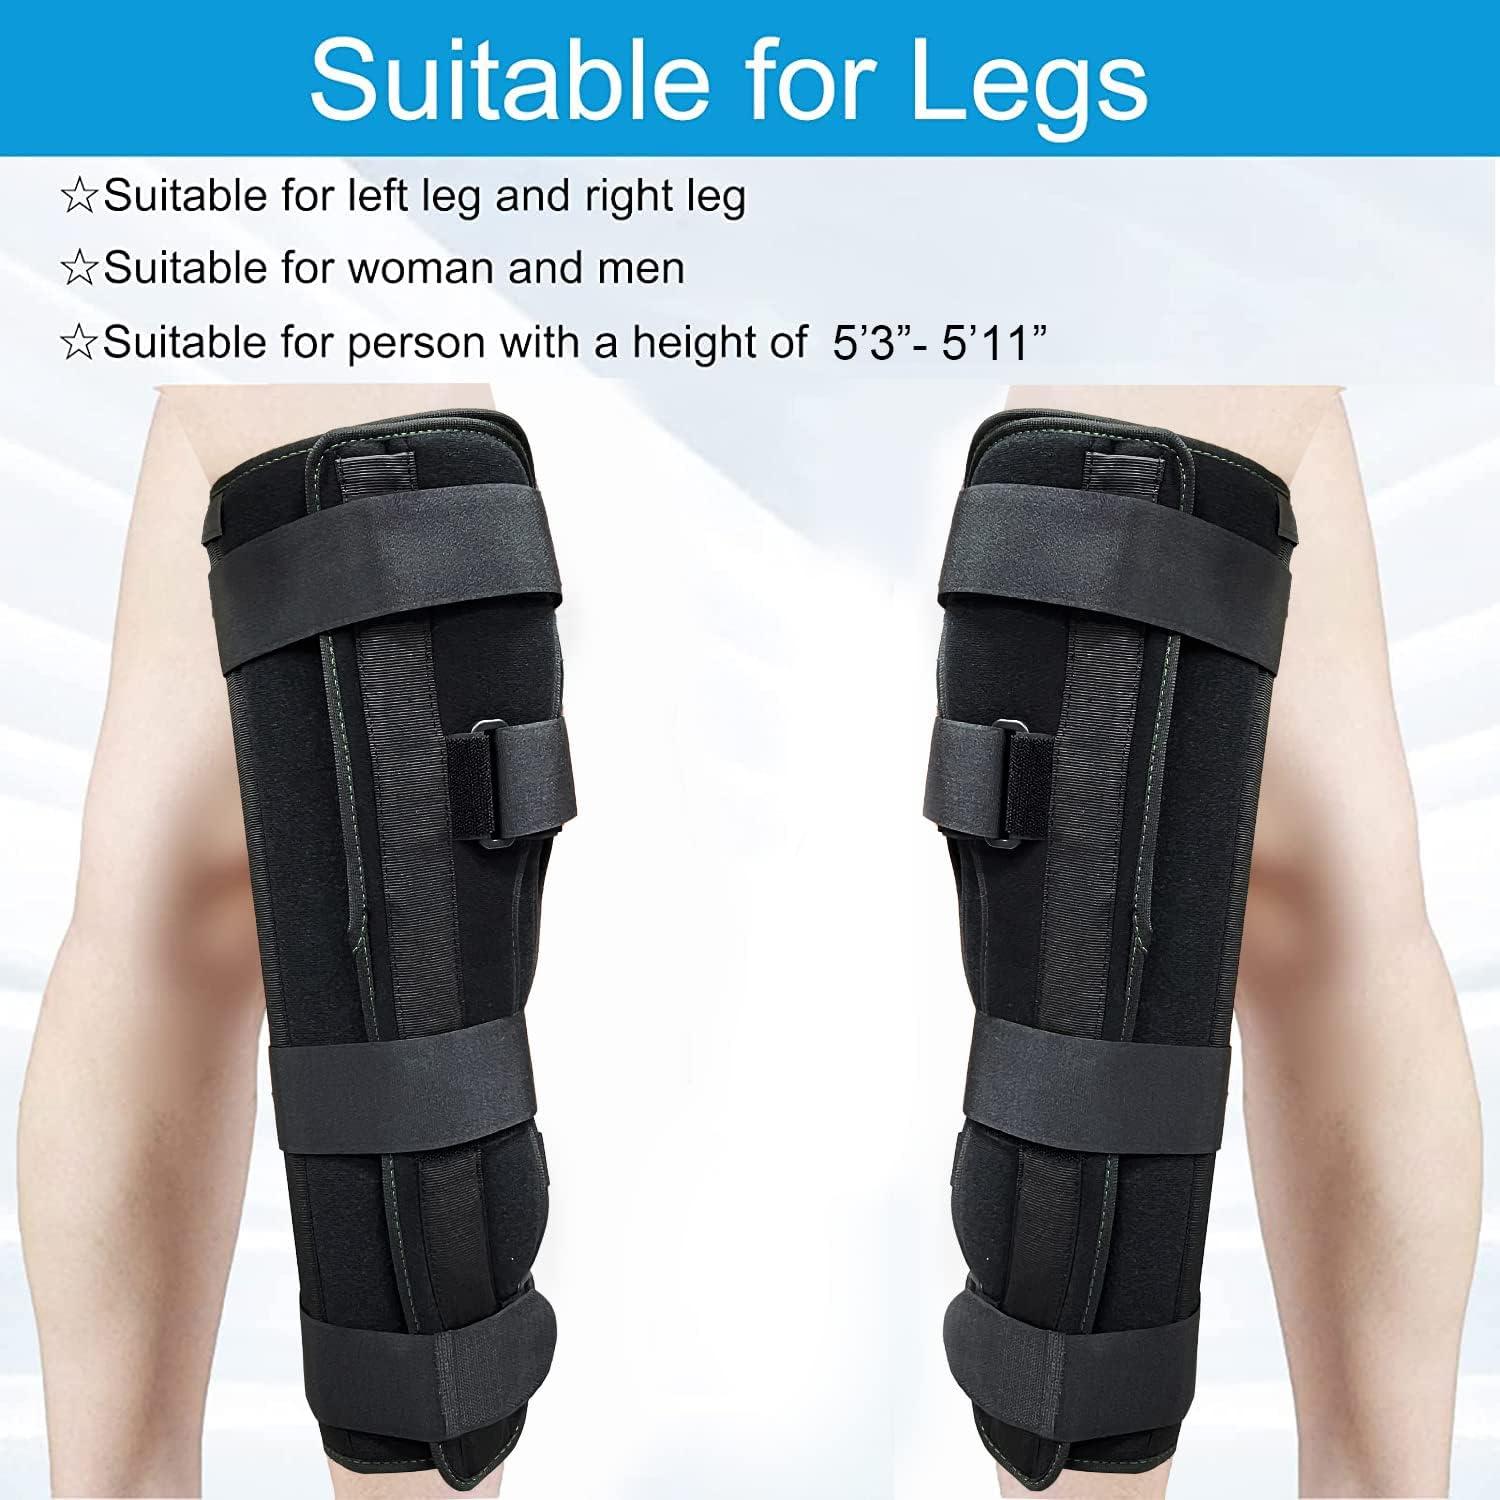 Buy Knee Immobilizer Full Leg Brace, Breathable Knee Band